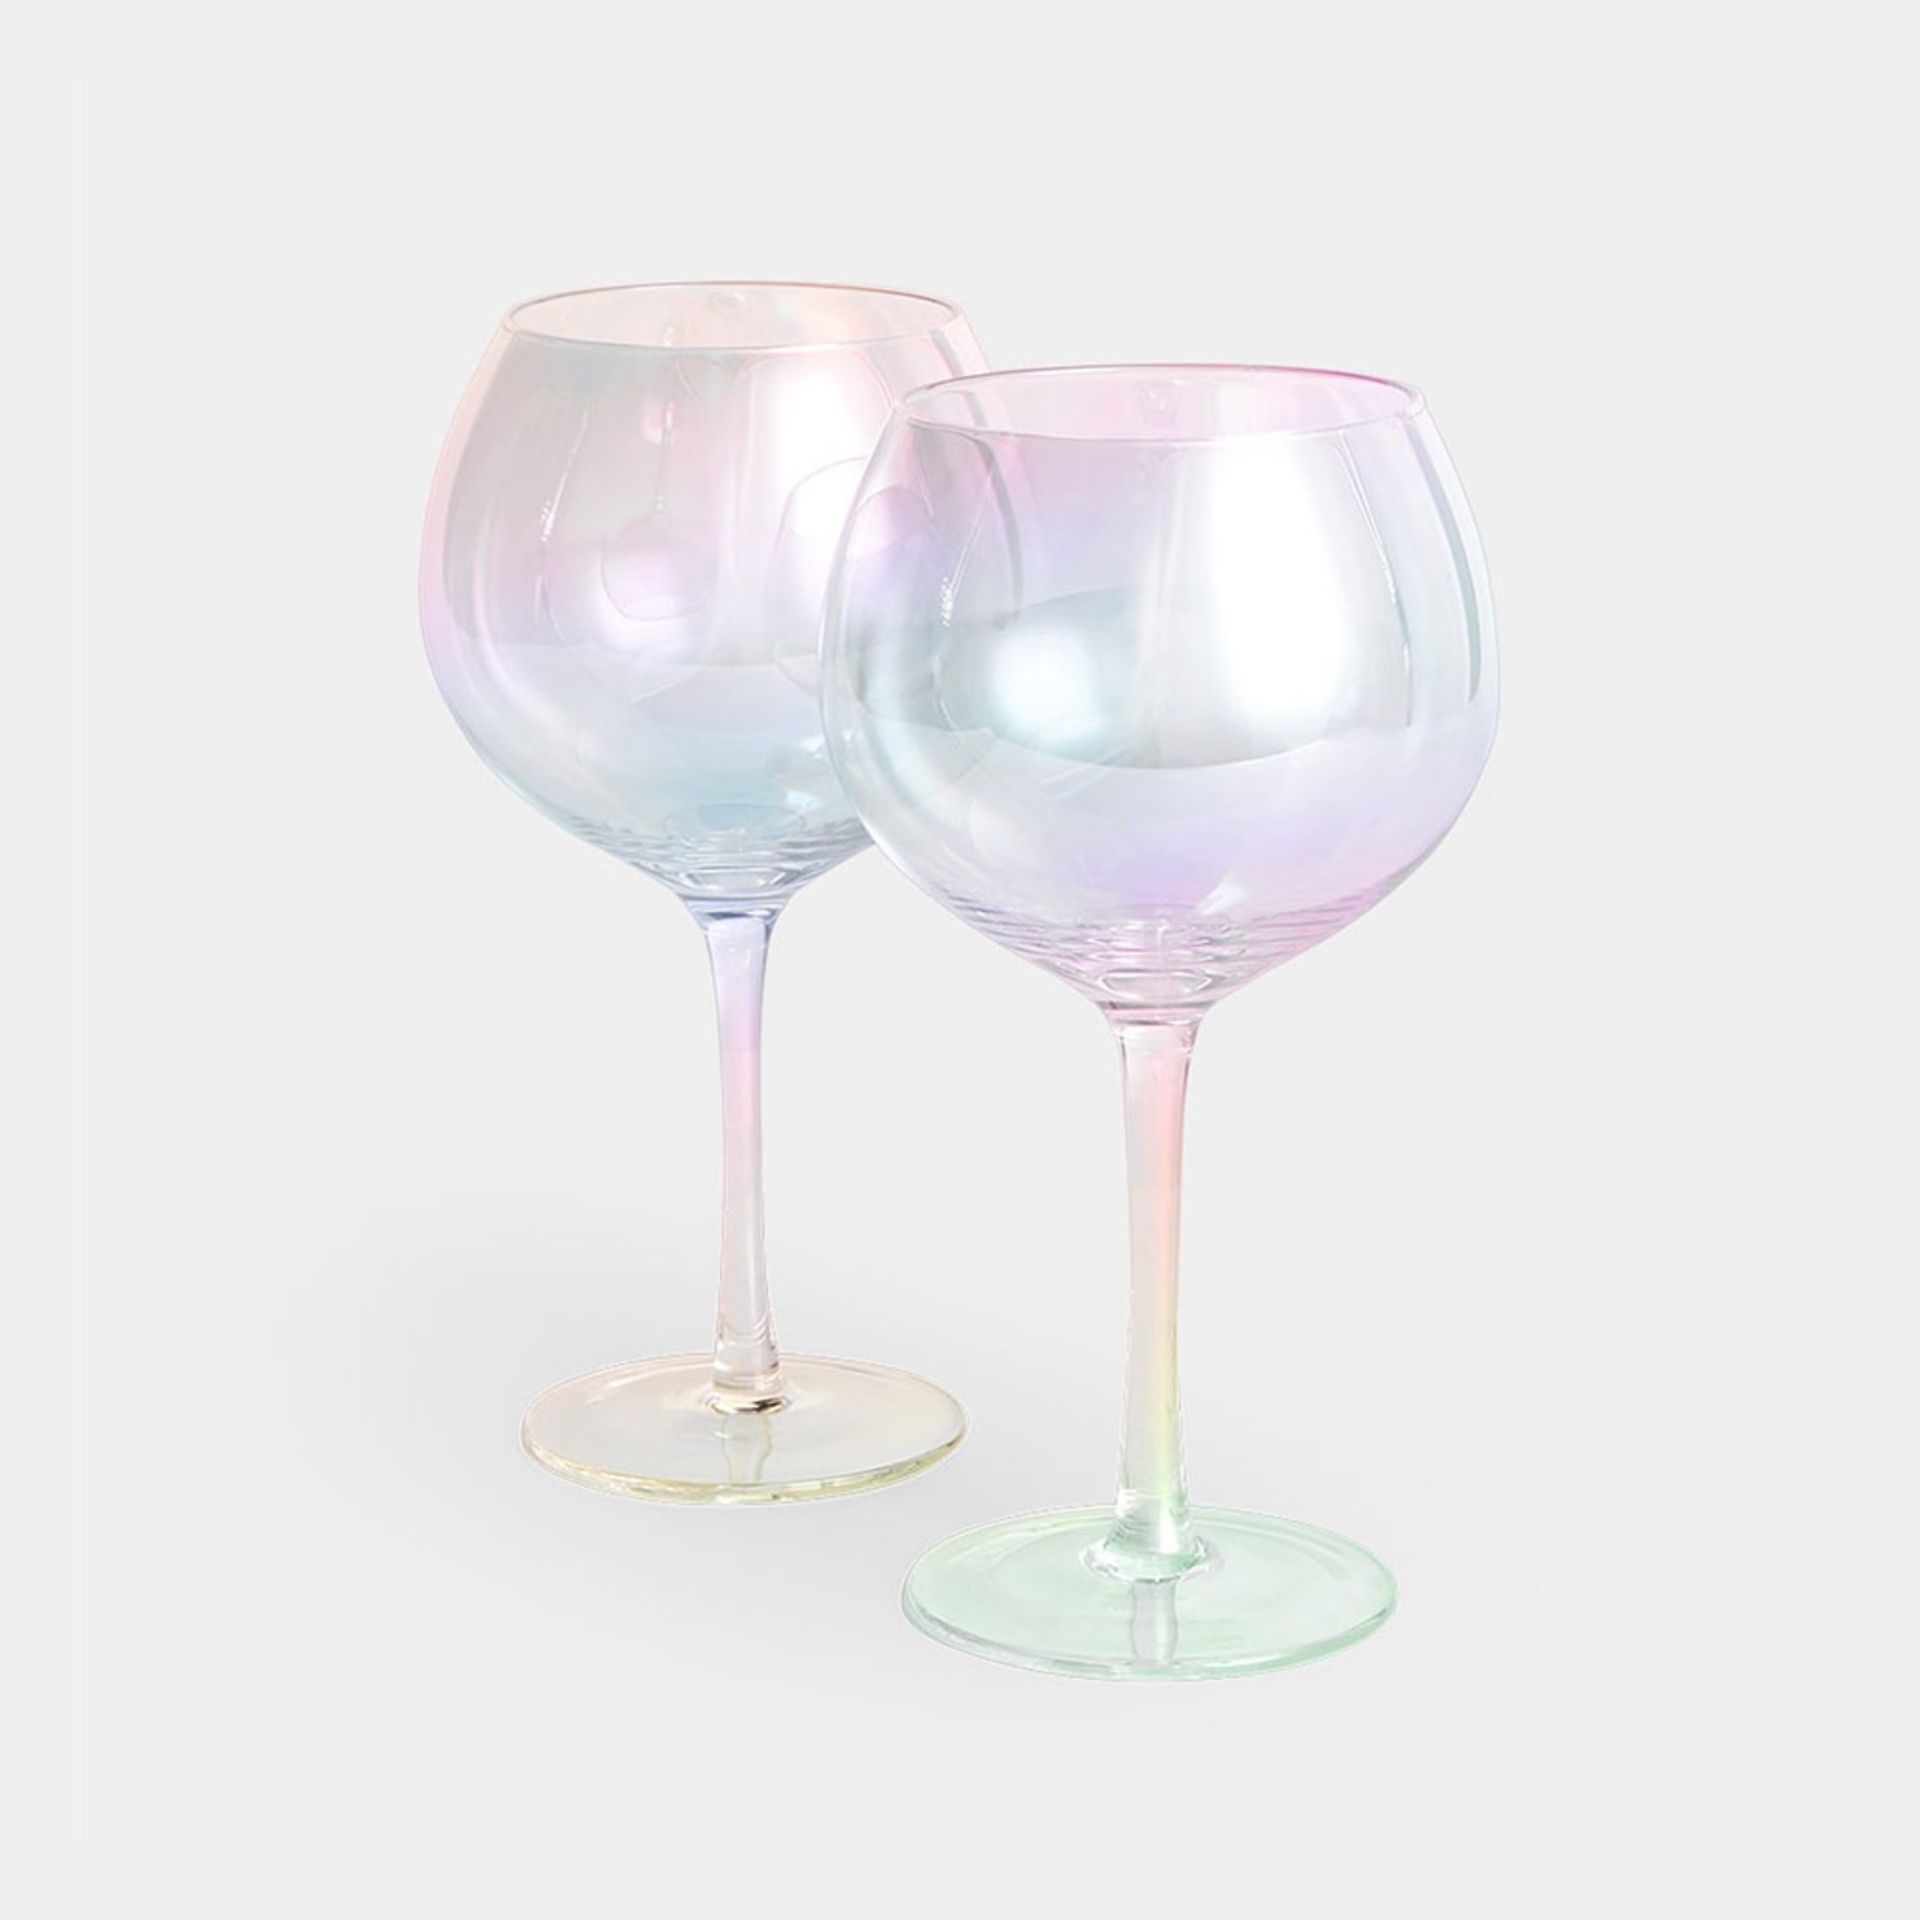 Iridescent Gin Glasses- ER30